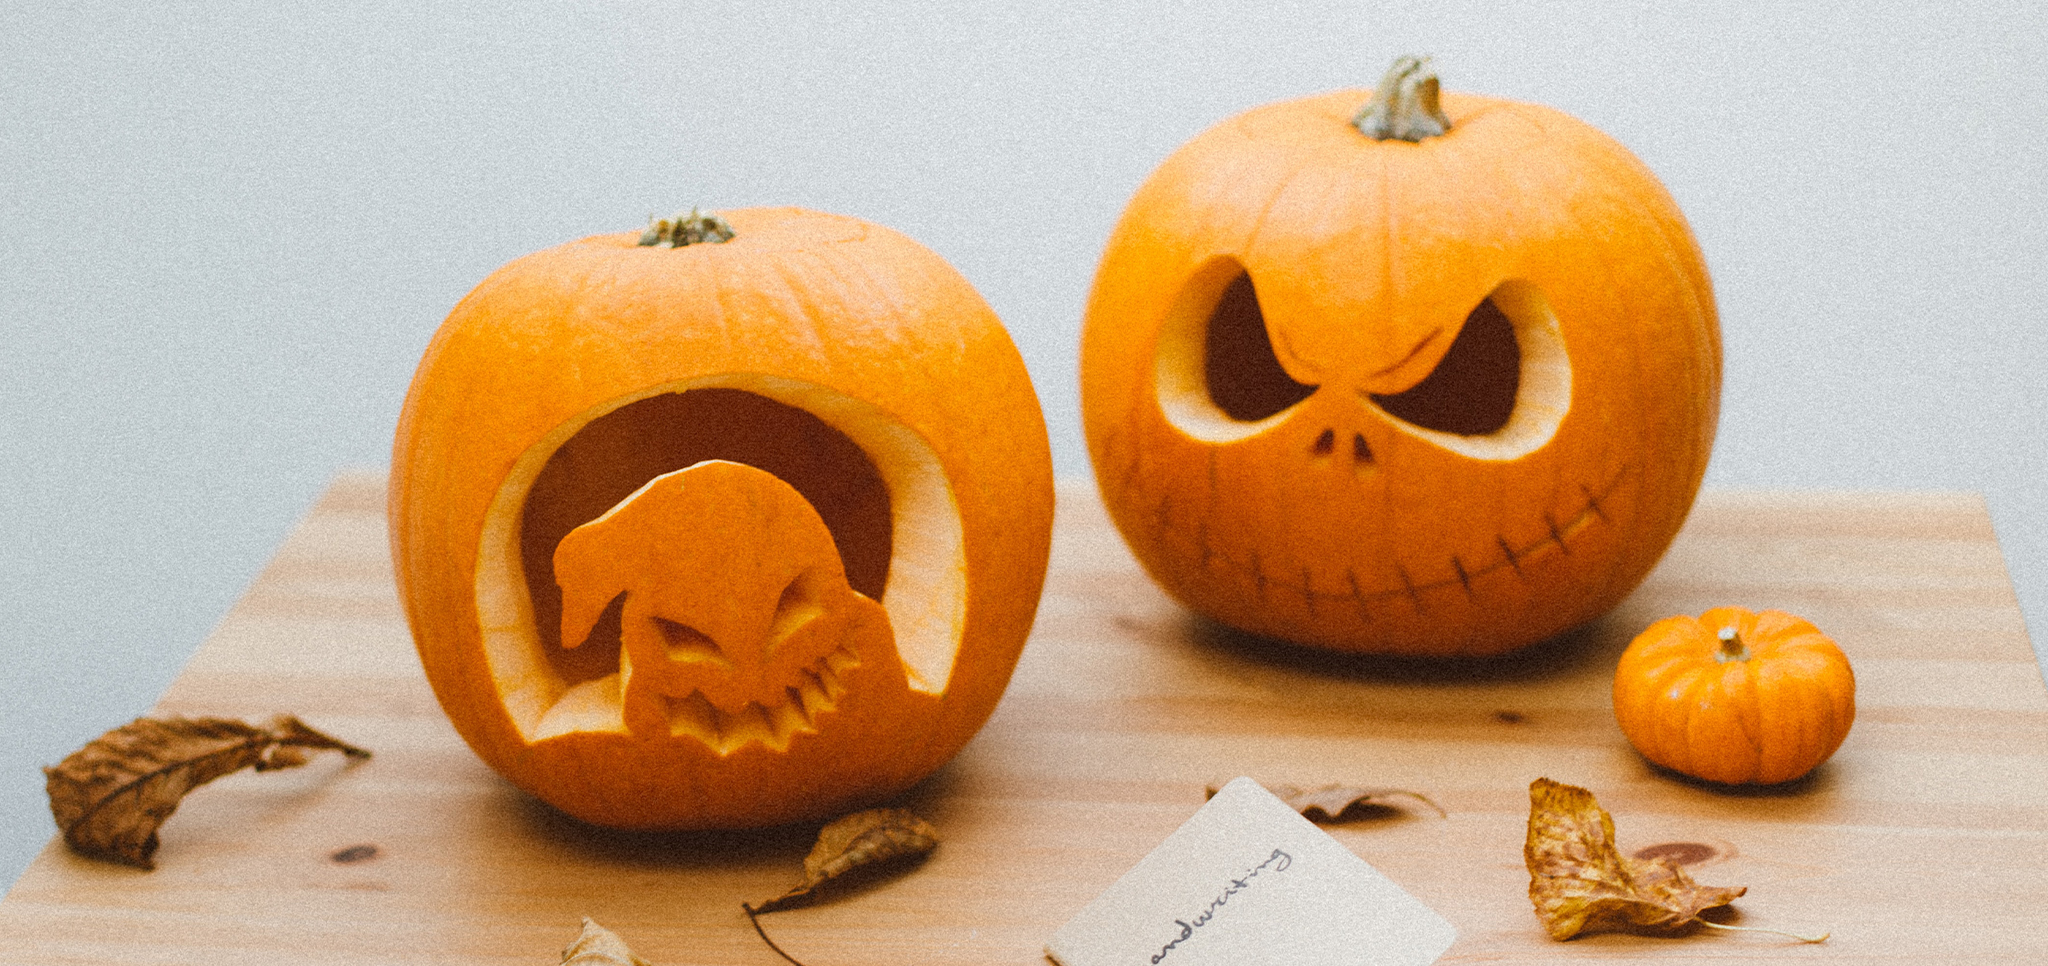 bord bijgeloof Ver weg De 19 mooiste Halloween pompoenen voor in huis – Femke blogt